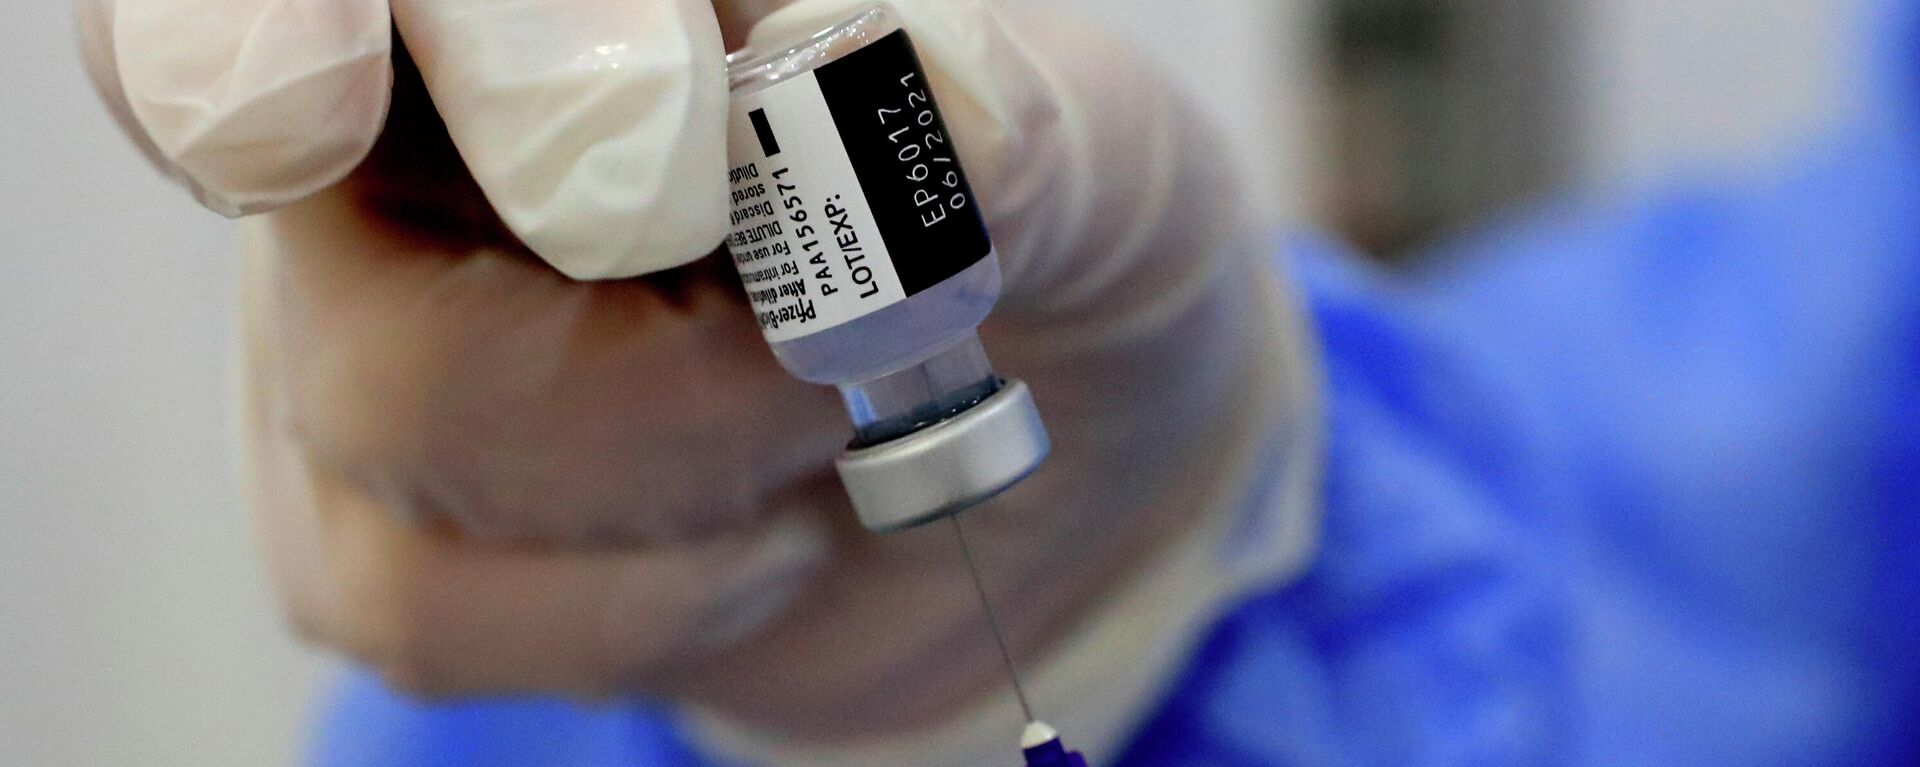 Una enfermera prepara una jeringa de la vacuna contra el coronavirus de Pfizer-BioNTech COVID-19 durante una campaña de vacunación en Beirut, Líbano, 16 de febrero de 2021. - Sputnik Mundo, 1920, 14.06.2021